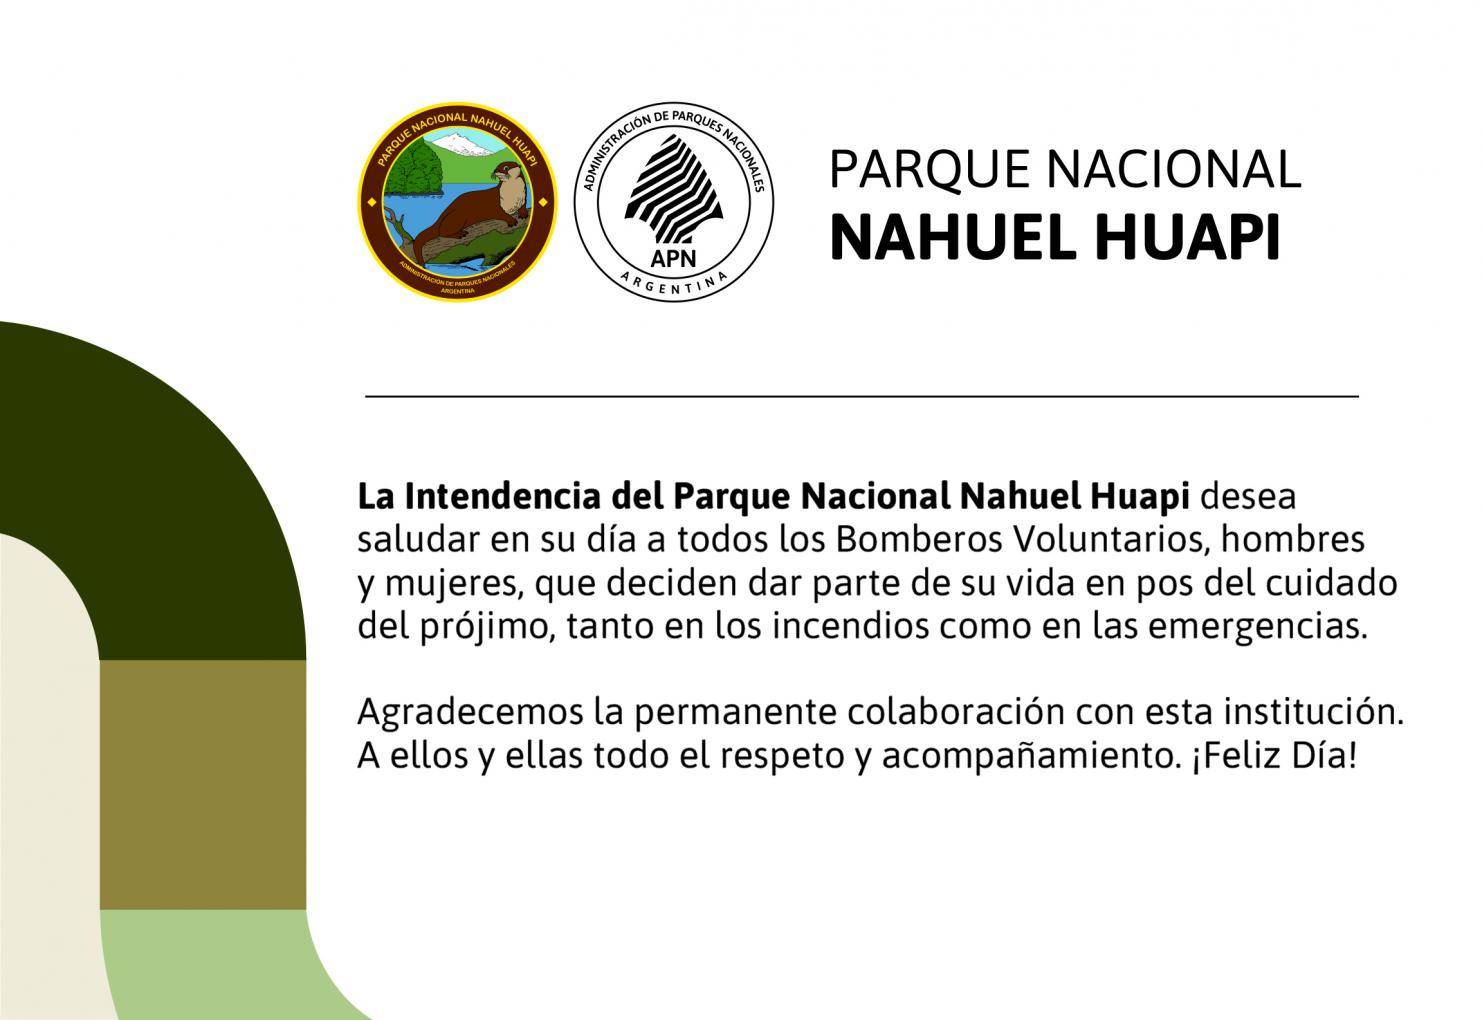 El Parque Nacional Nahuel Huapi salud&oacute; a los bomberos voluntarios en su d&iacute;a